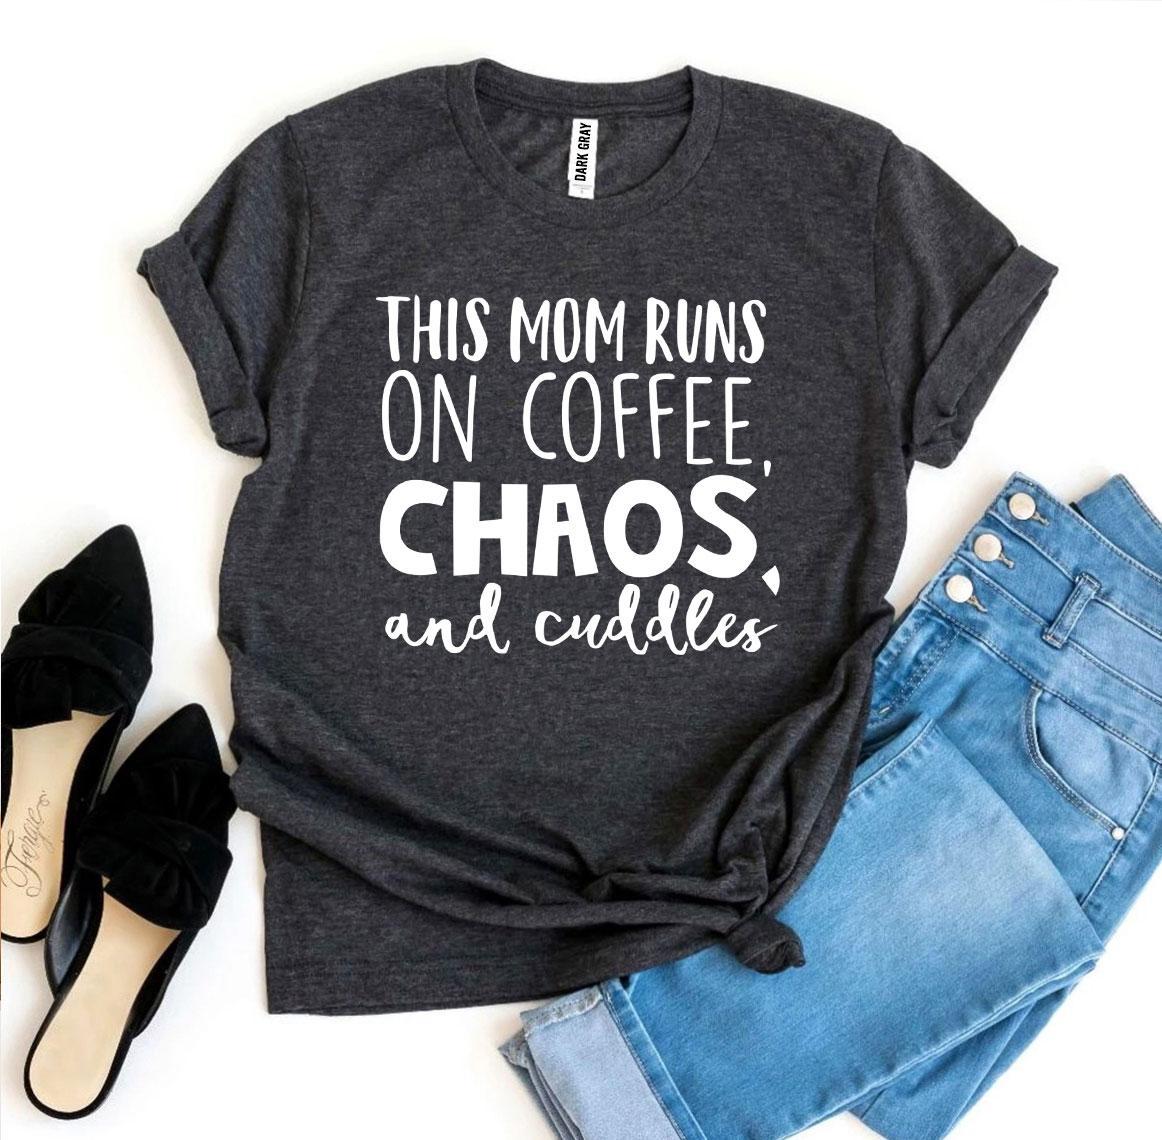 T-shirts This Mom Runs On Coffee, Chaos, & Cuddles T-shirt